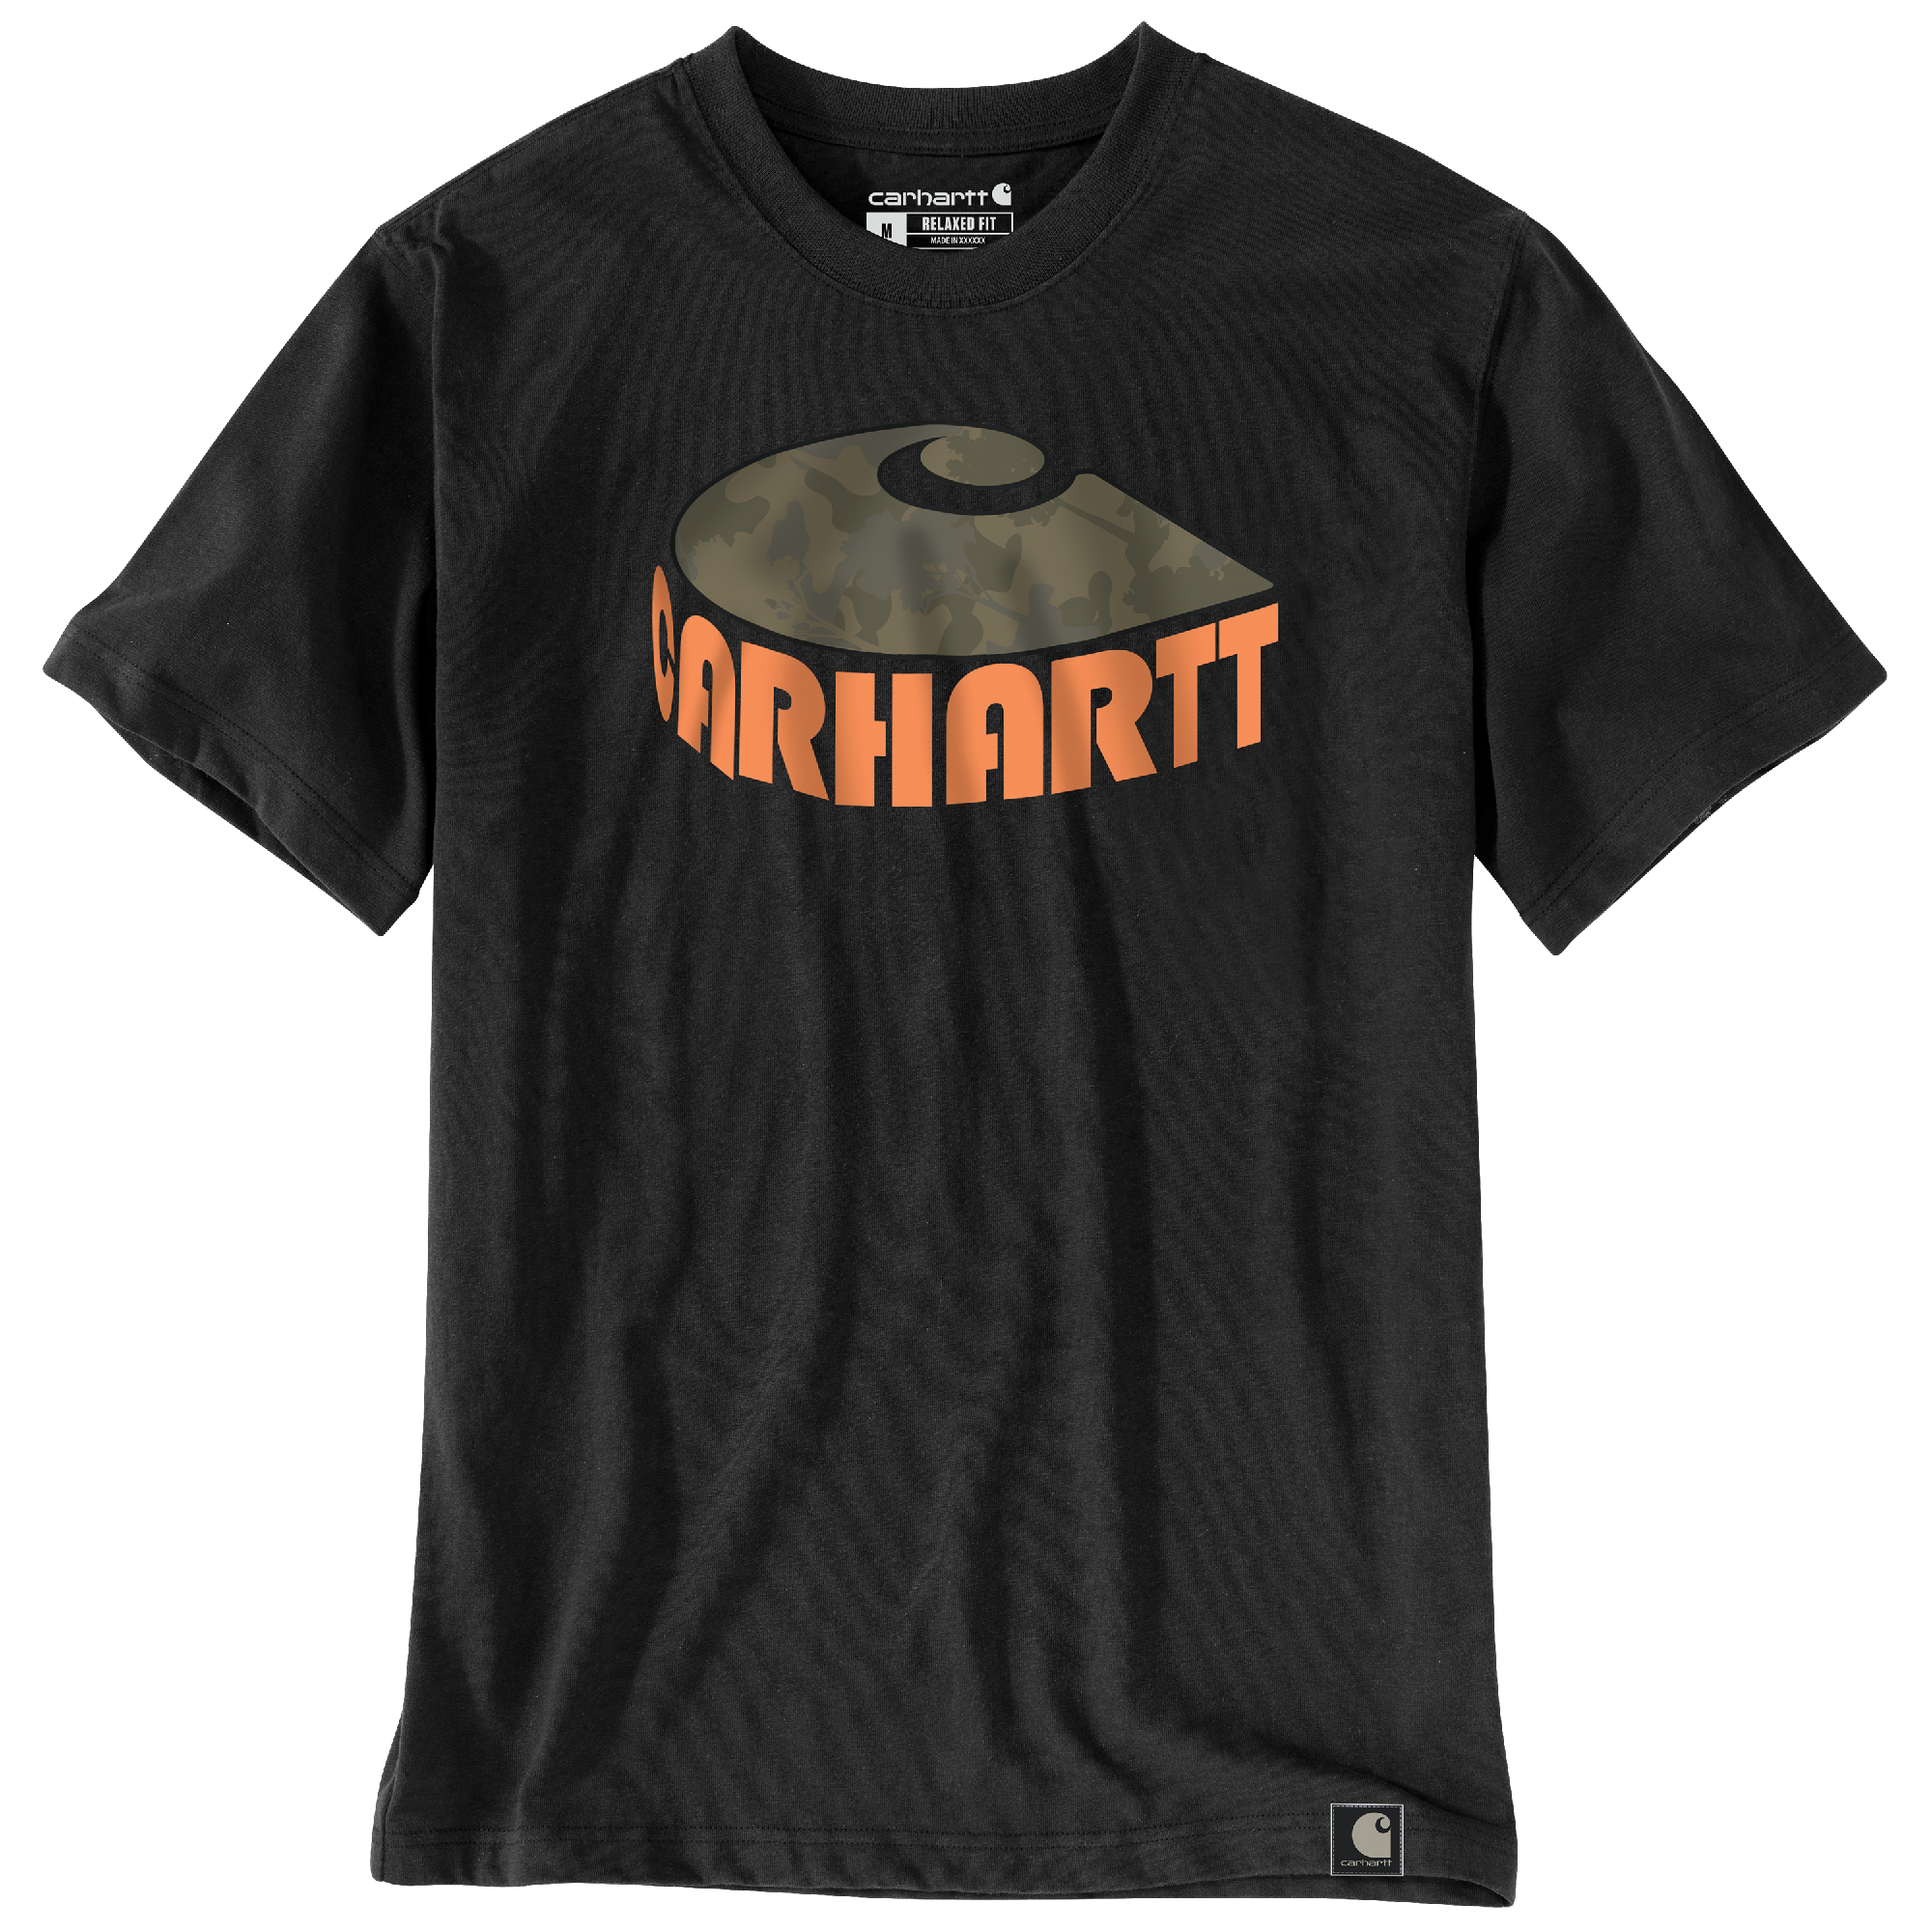 Carhartt Men's Relaxed Fit Heavyweight Camo "C" Short Sleeve T-Shirt - Work World - Workwear, Work Boots, Safety Gear